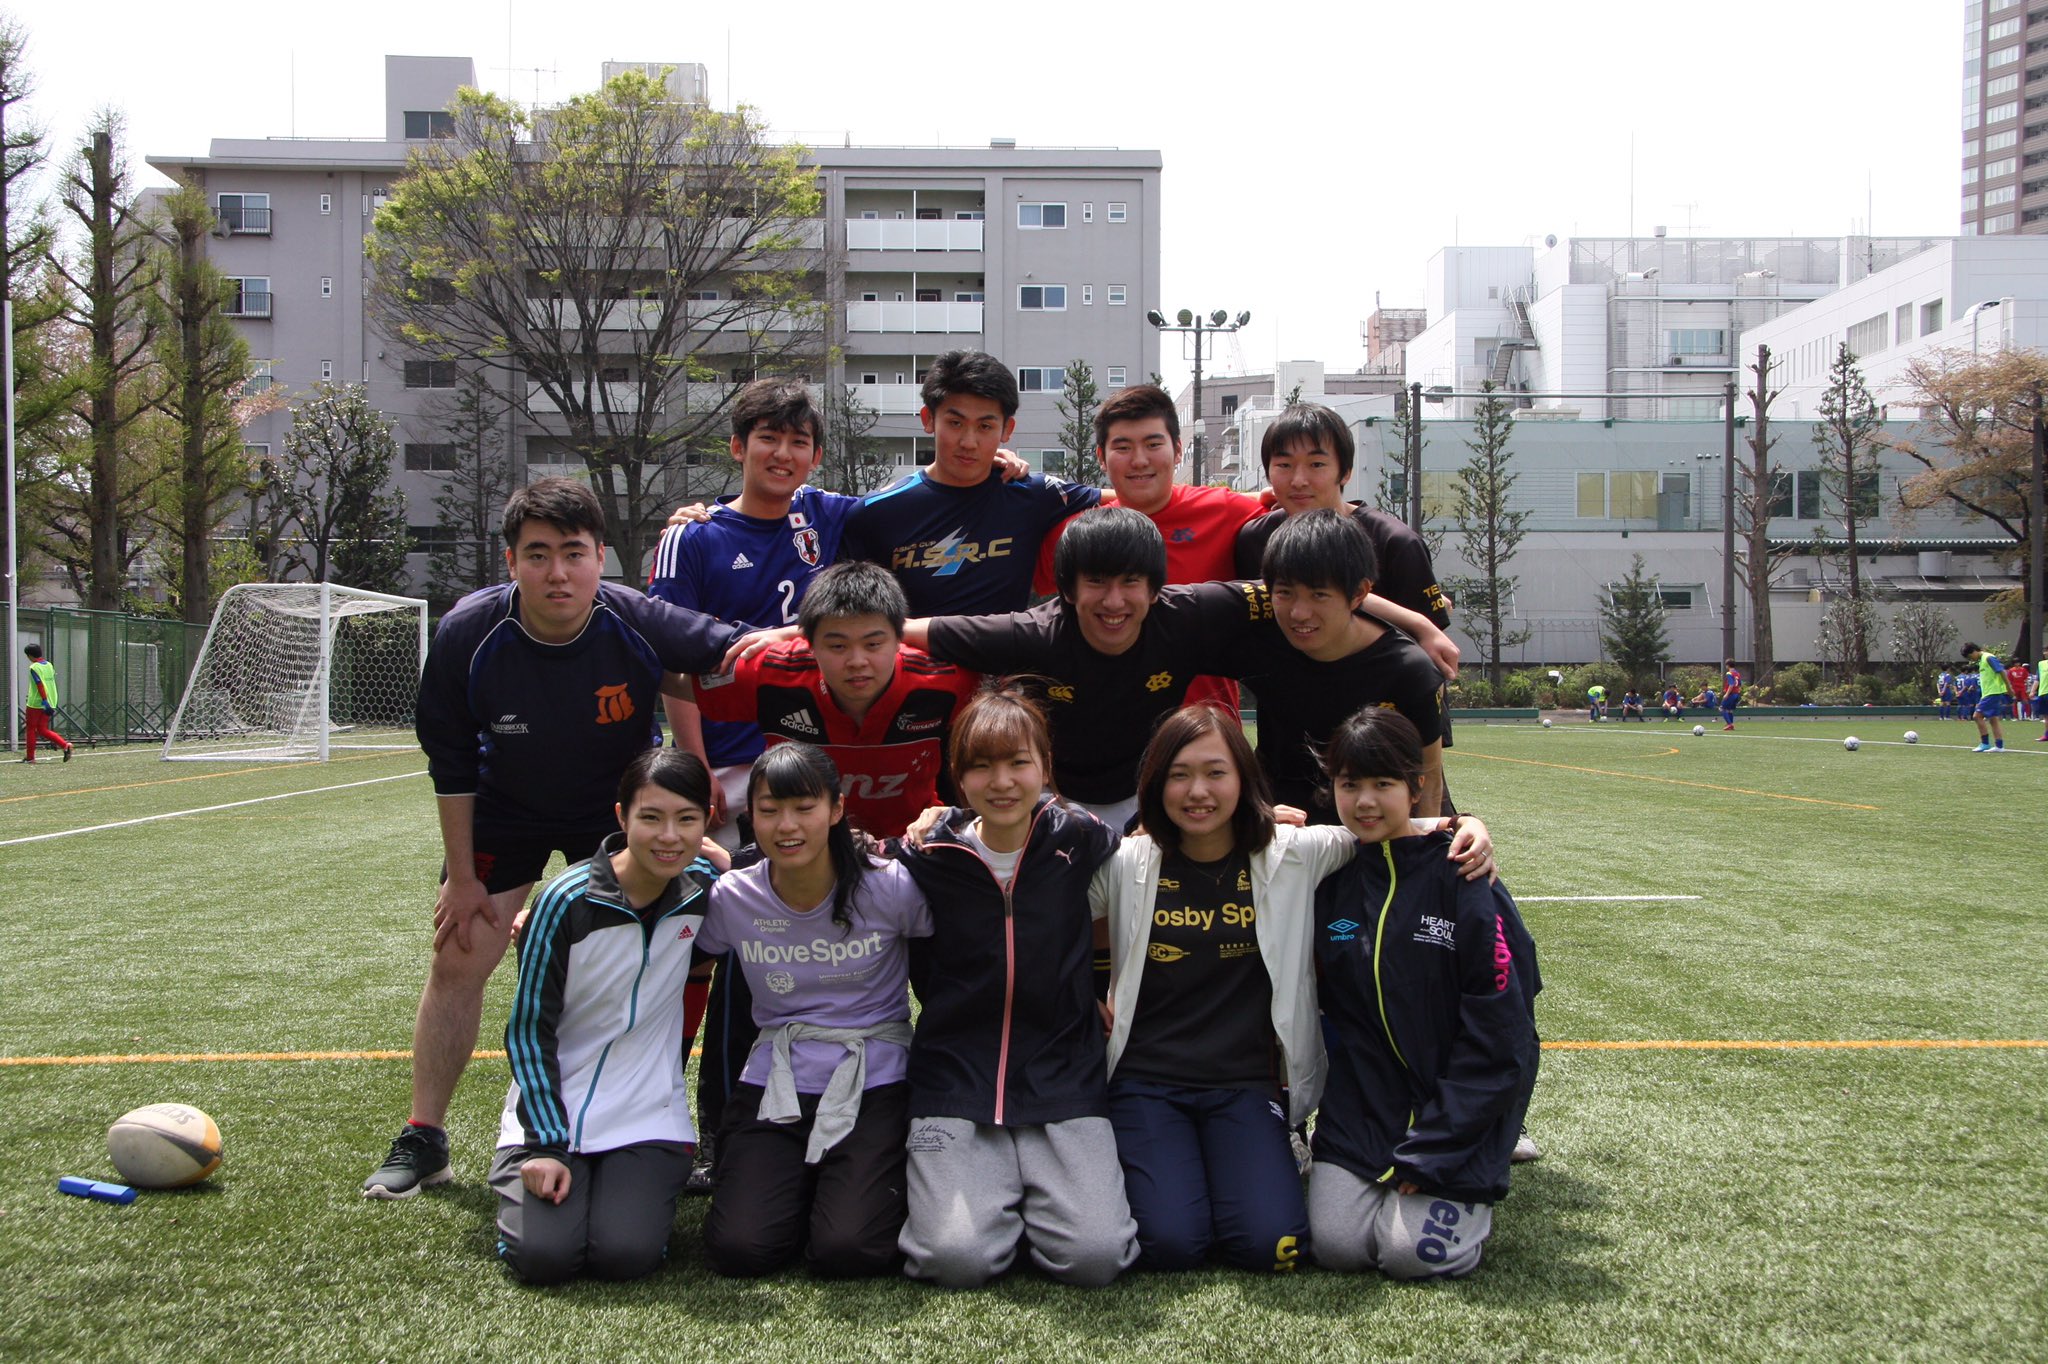 慶應義塾大学 体育会所属団体 JSKS RFC on Twitter: "昨日の写真です😎！ 試合の際には毎回OBの方が素敵な写真を撮って